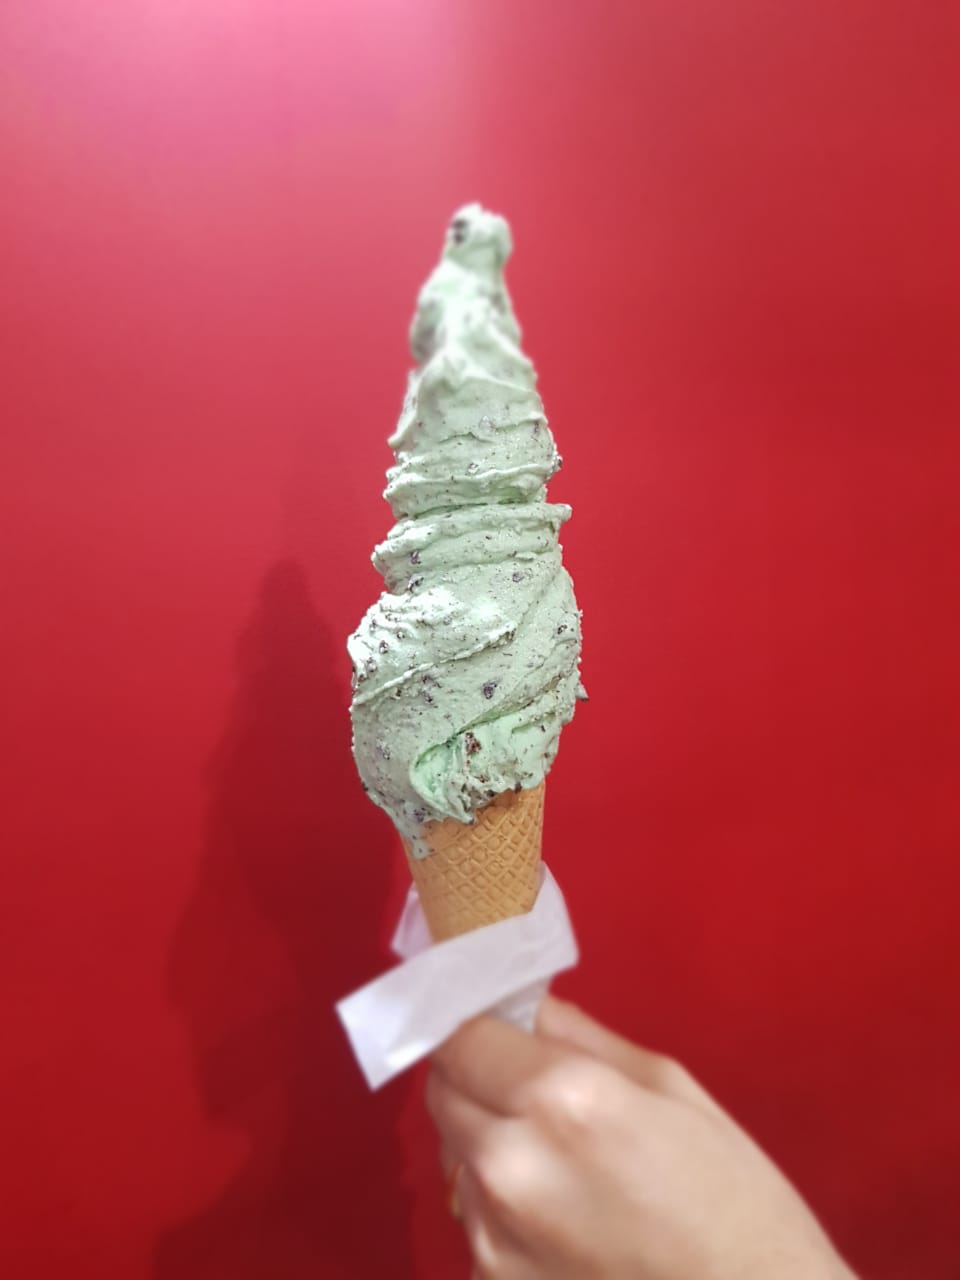 Cucurucho de helado sabor Menta granizada